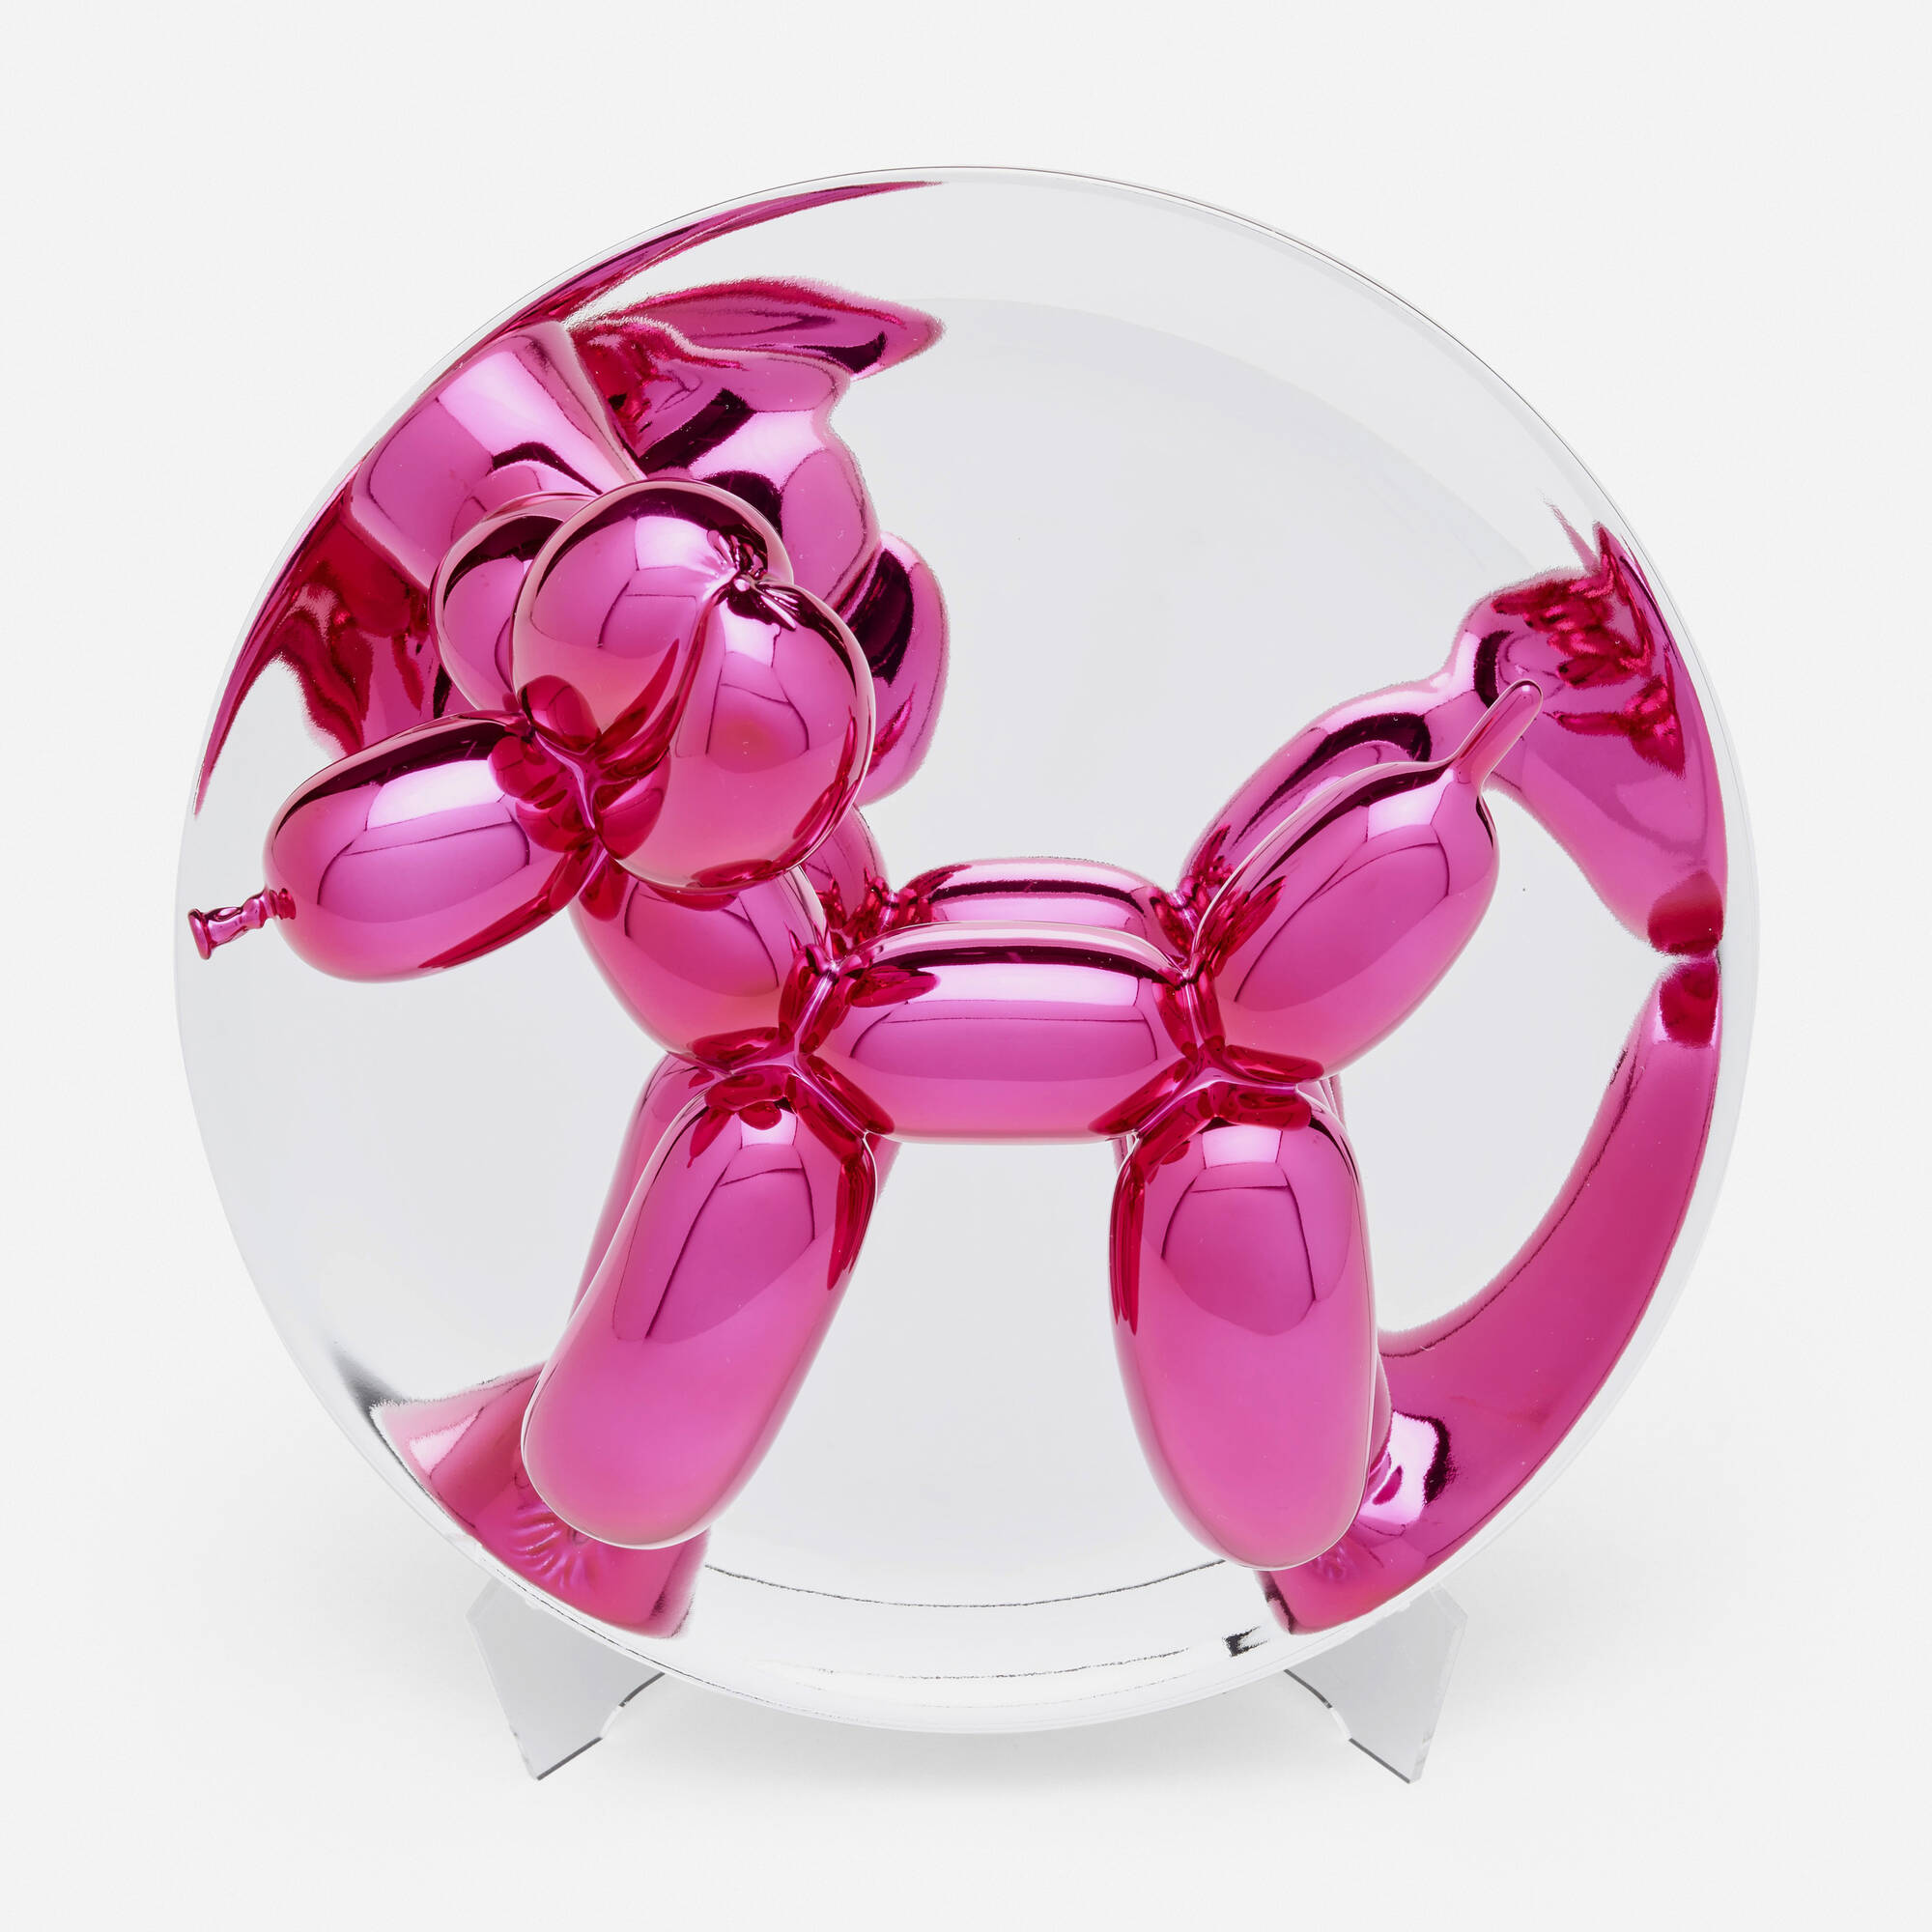 Verandering Beschikbaar waterbestendig 101: JEFF KOONS, Balloon Dog (Magenta) < Art + Design, 23 June 2022 <  Auctions | Los Angeles Modern Auctions (LAMA)